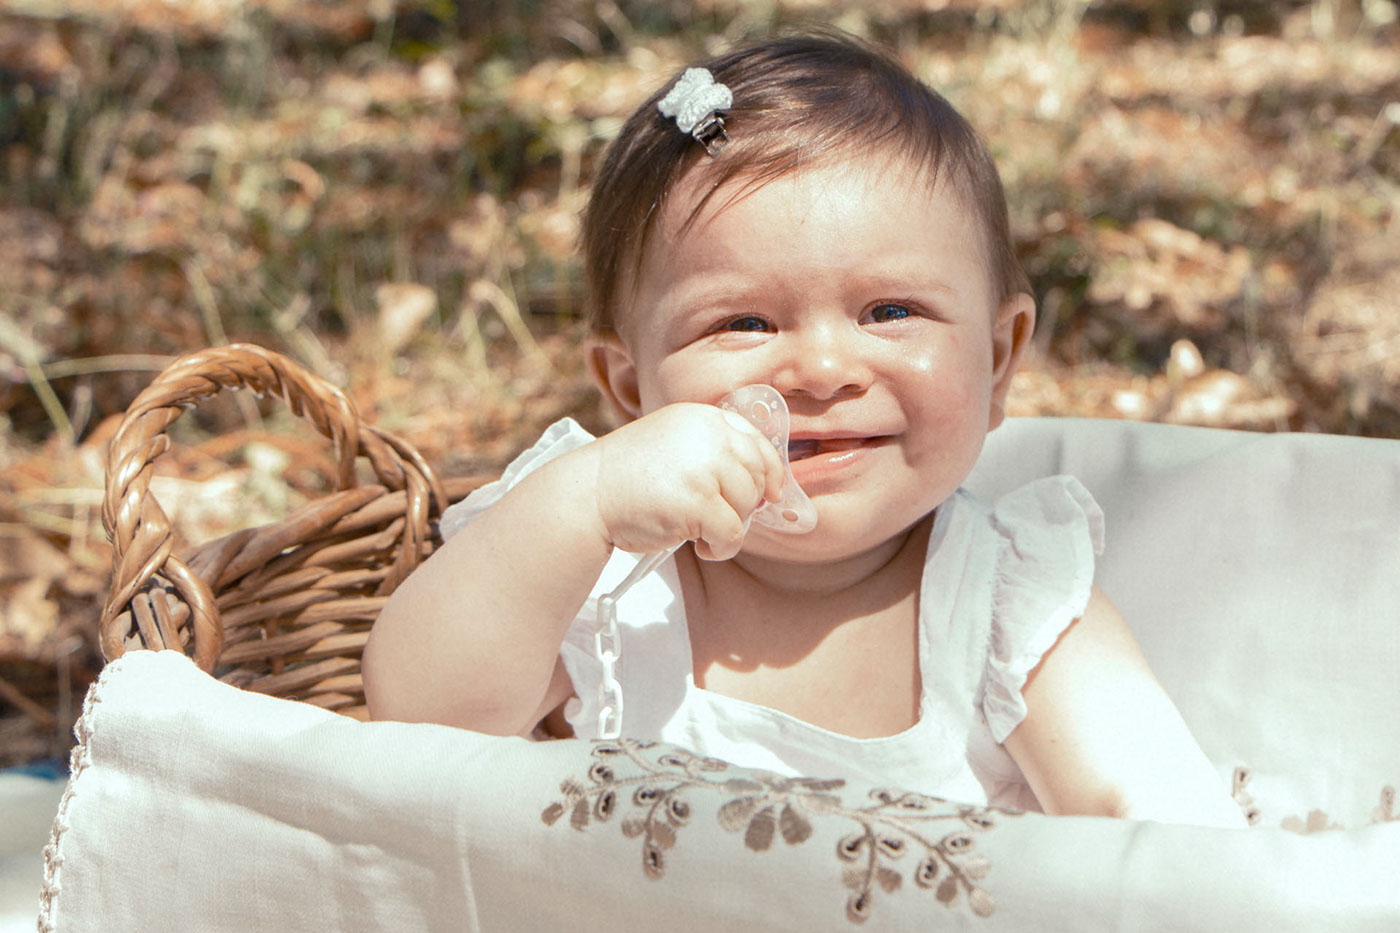 baby baby photography photo Vânia Viana V23:32V Beautiful girl Sun summer